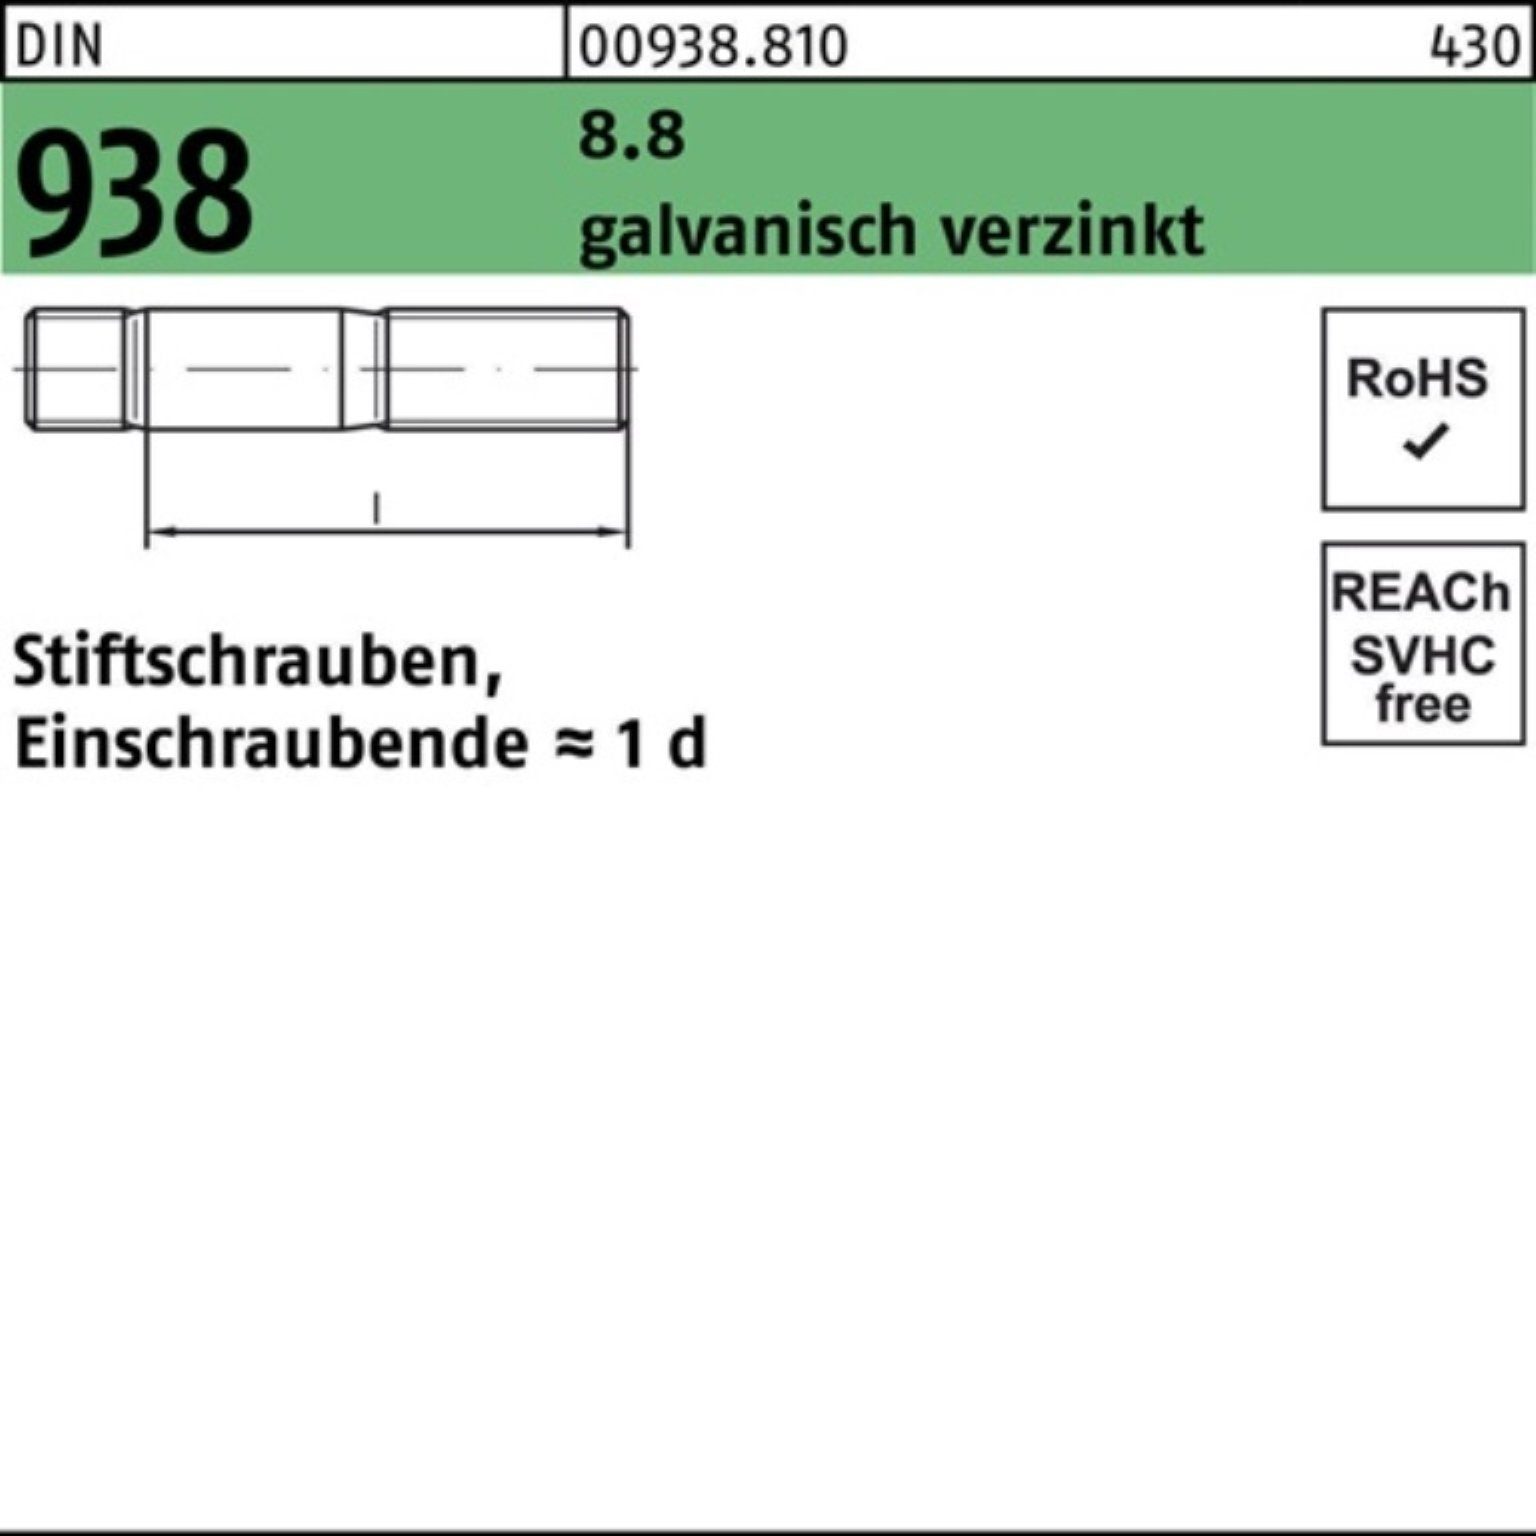 Reyher Stiftschraube 100er Stiftschraube galv.verz. 140 DIN M24x 938 DIN Pack 8.8 1 Stück